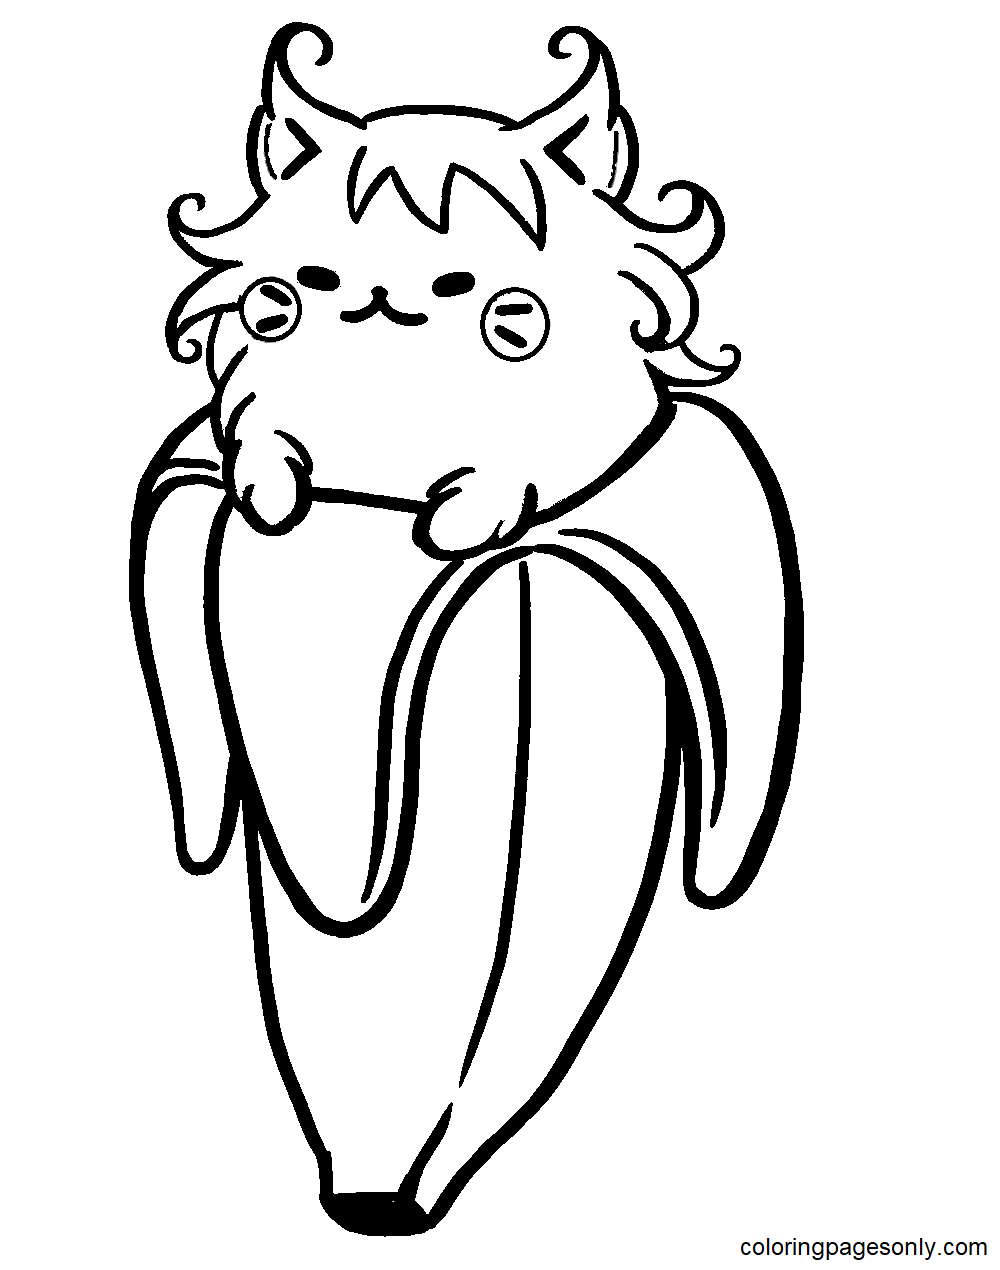 Desenho para colorir de bananya vampiro fofo